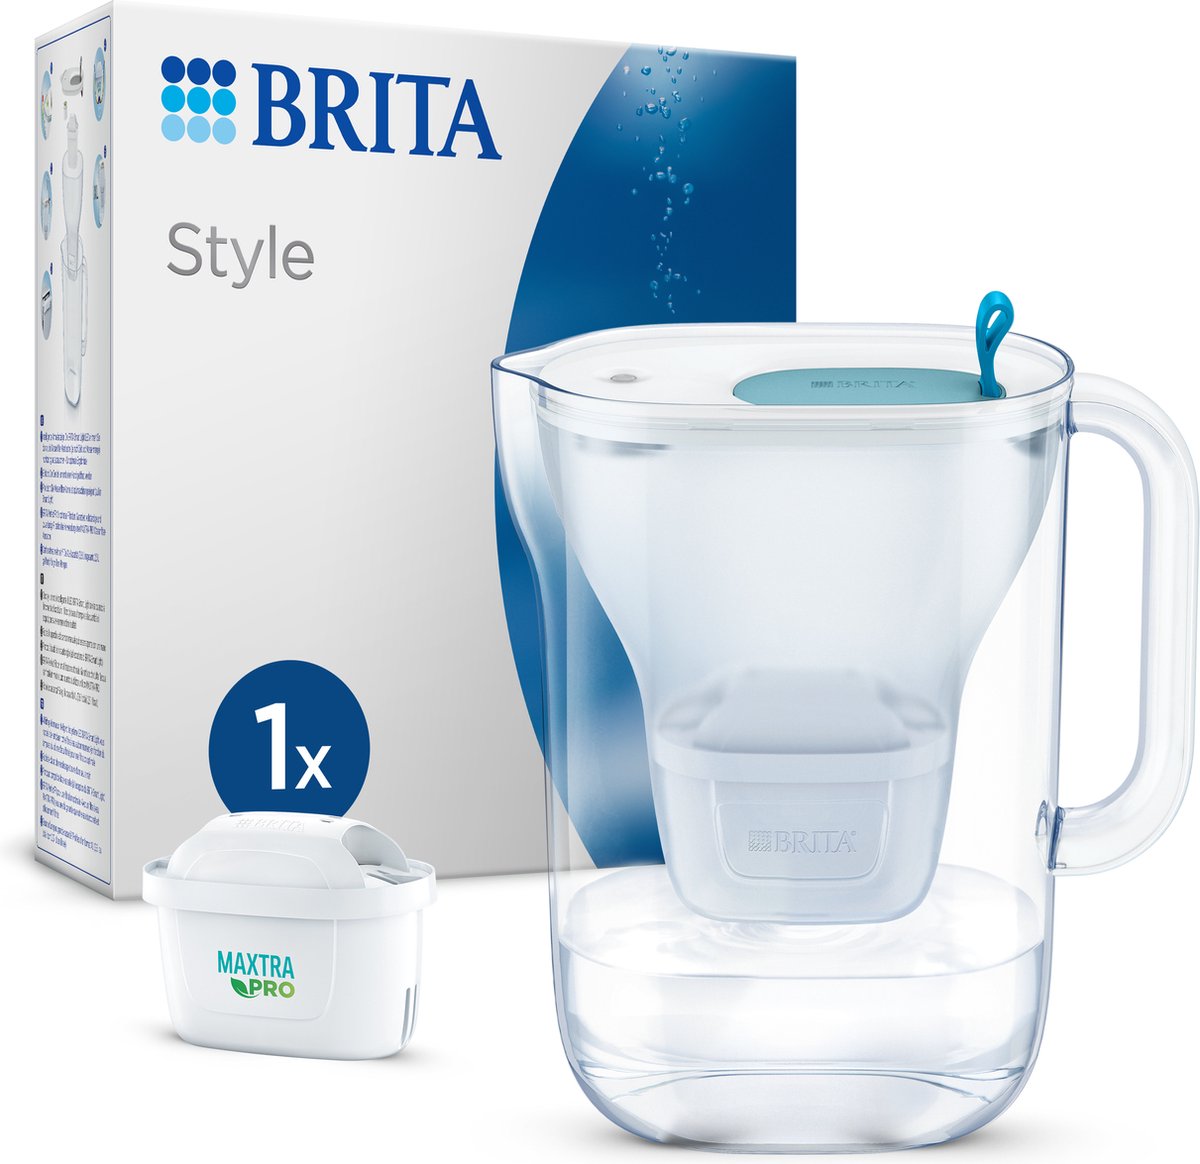 Filtre à eau Brita style pichet gris (2,4 L) incl. 1 x filtre tout-en-1  MAXTRA PRO (CASHBACK)